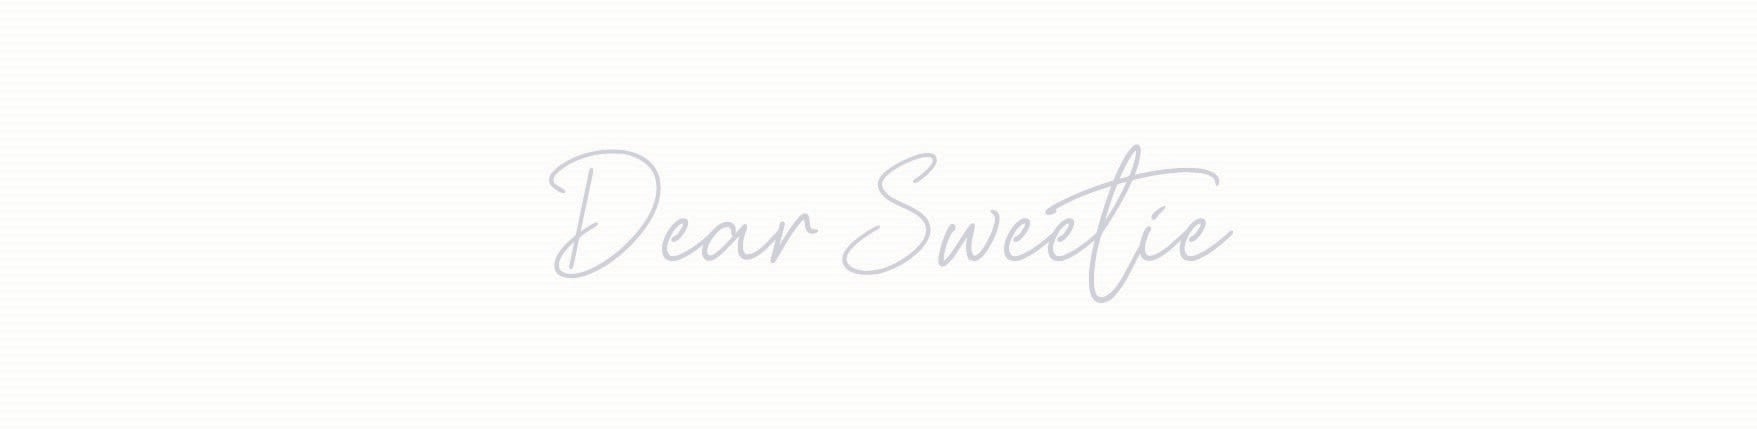 Dear Sweetie